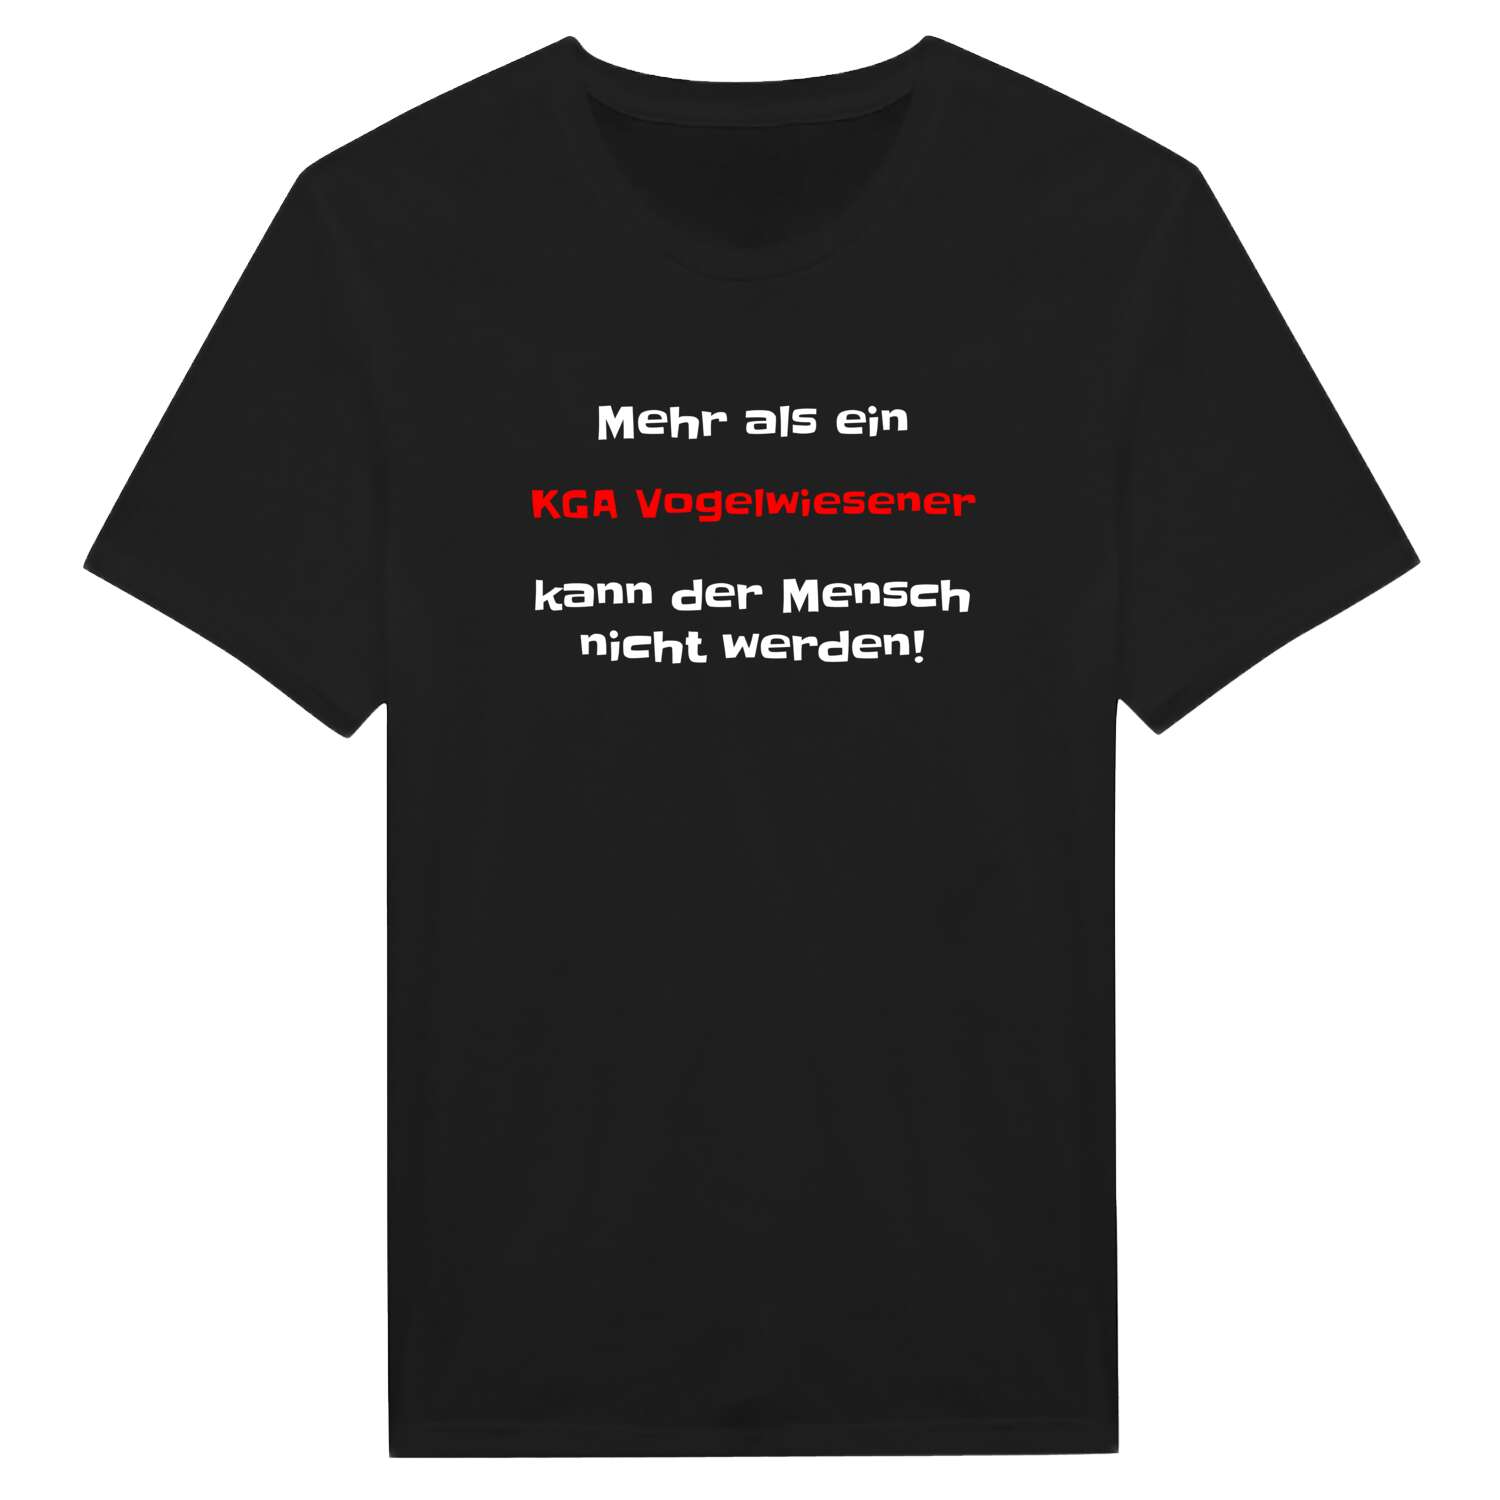 KGA Vogelwiese T-Shirt »Mehr als ein«